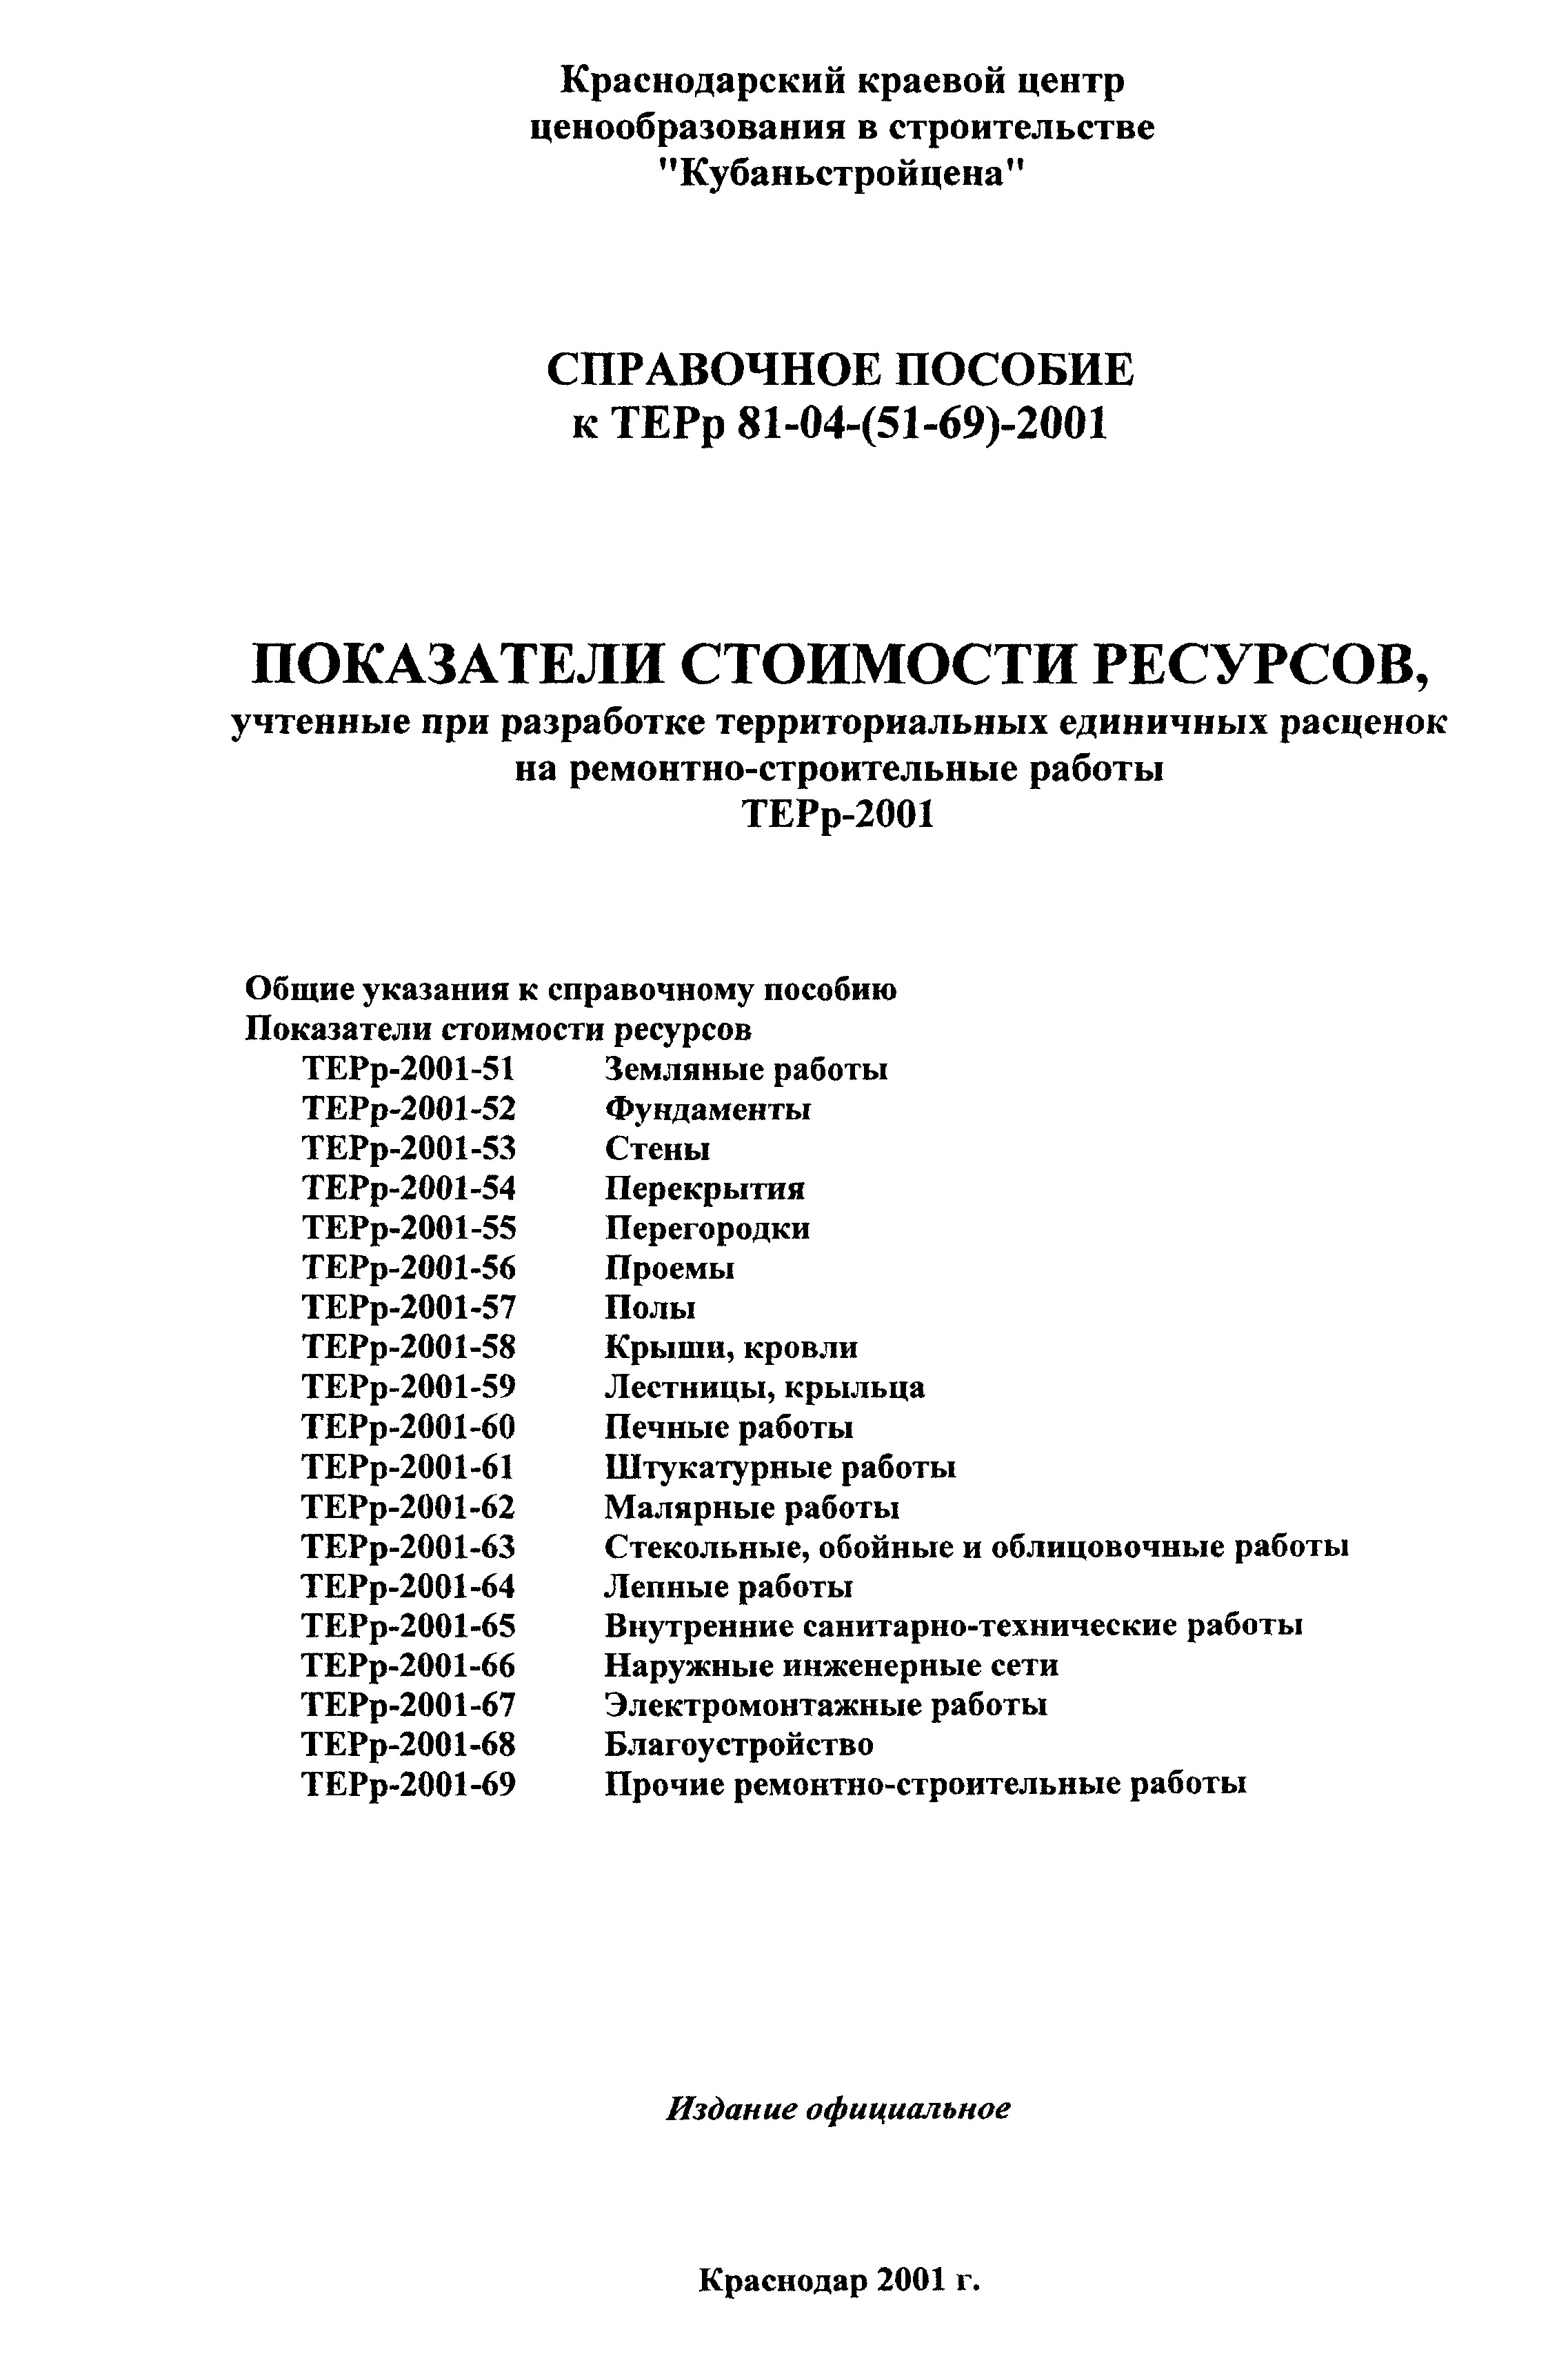 Справочное пособие к ТЕРр 81-04-51-2001